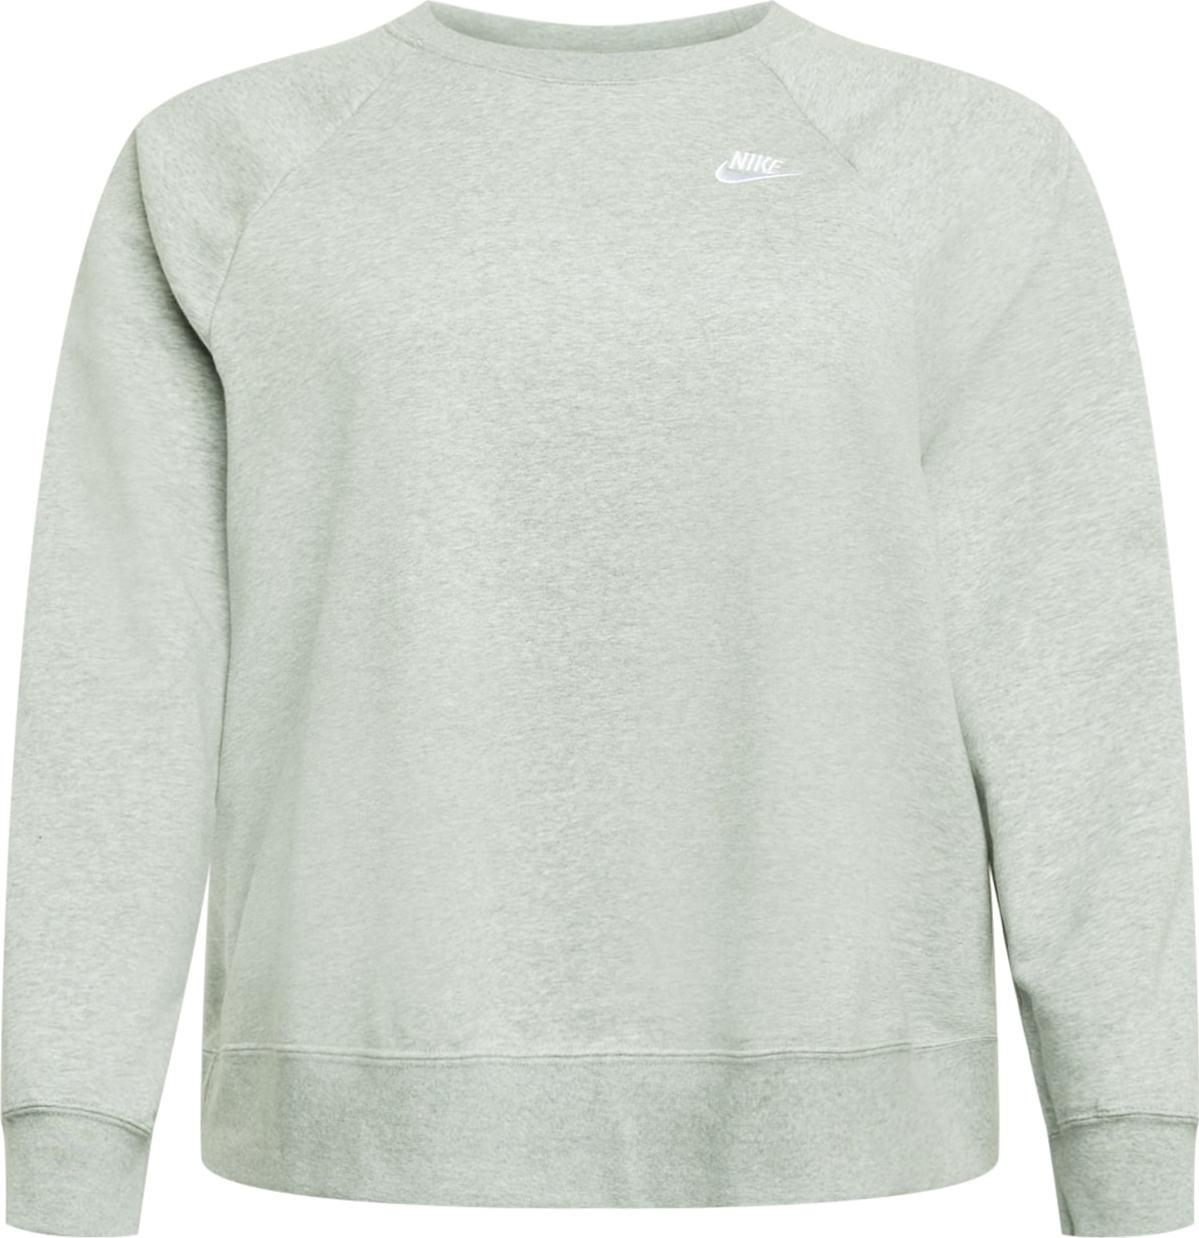 Nike Sportswear Mikina světle šedá / bílá